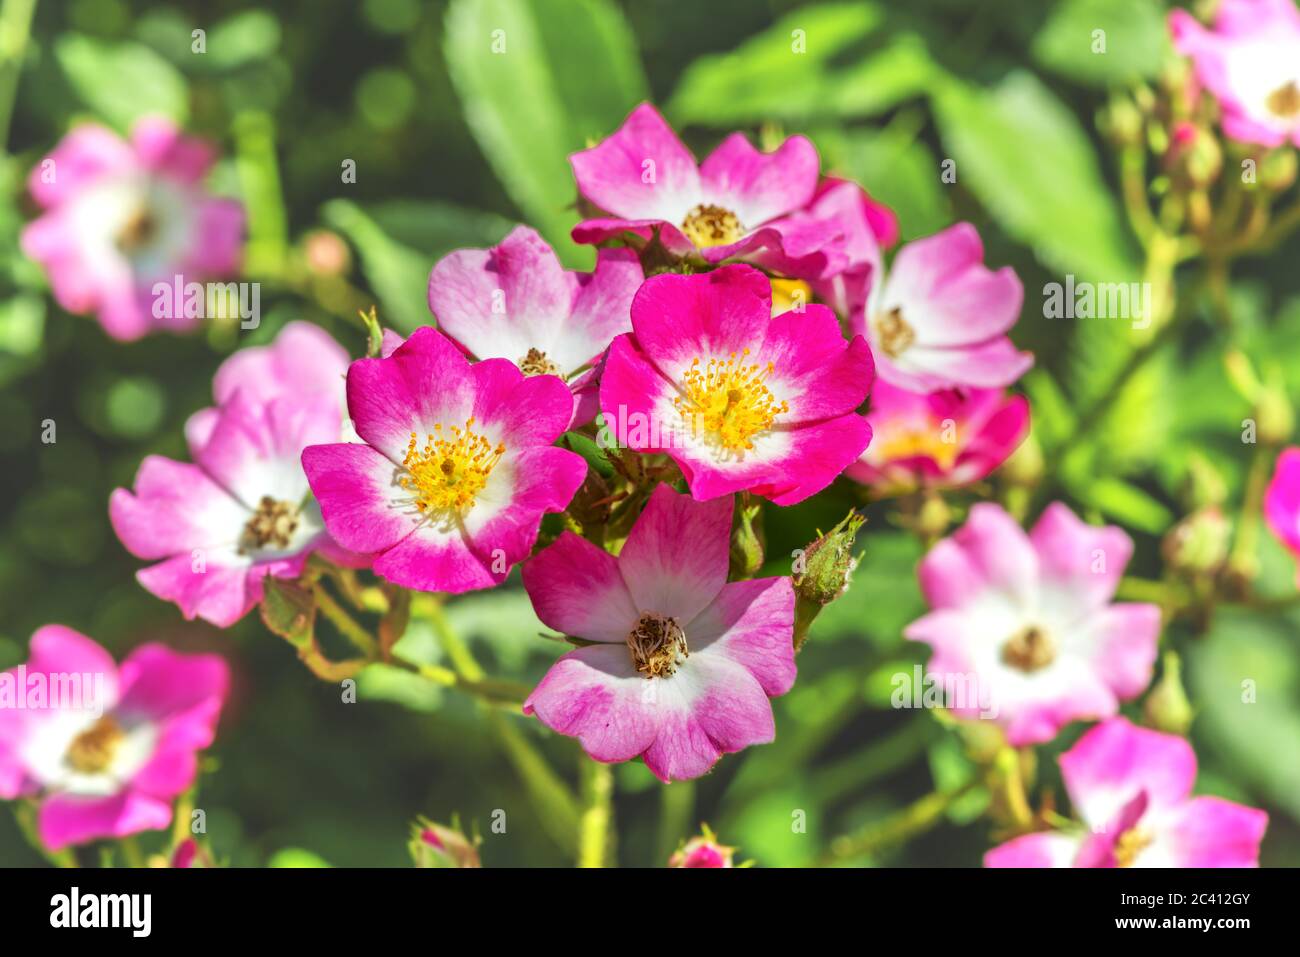 Un frammento di una vernice occhio di rosone. I fiori in fiore di un colore mostrano il loro centro, in cui è visibile uno spettro di colori contrastanti. Foto Stock